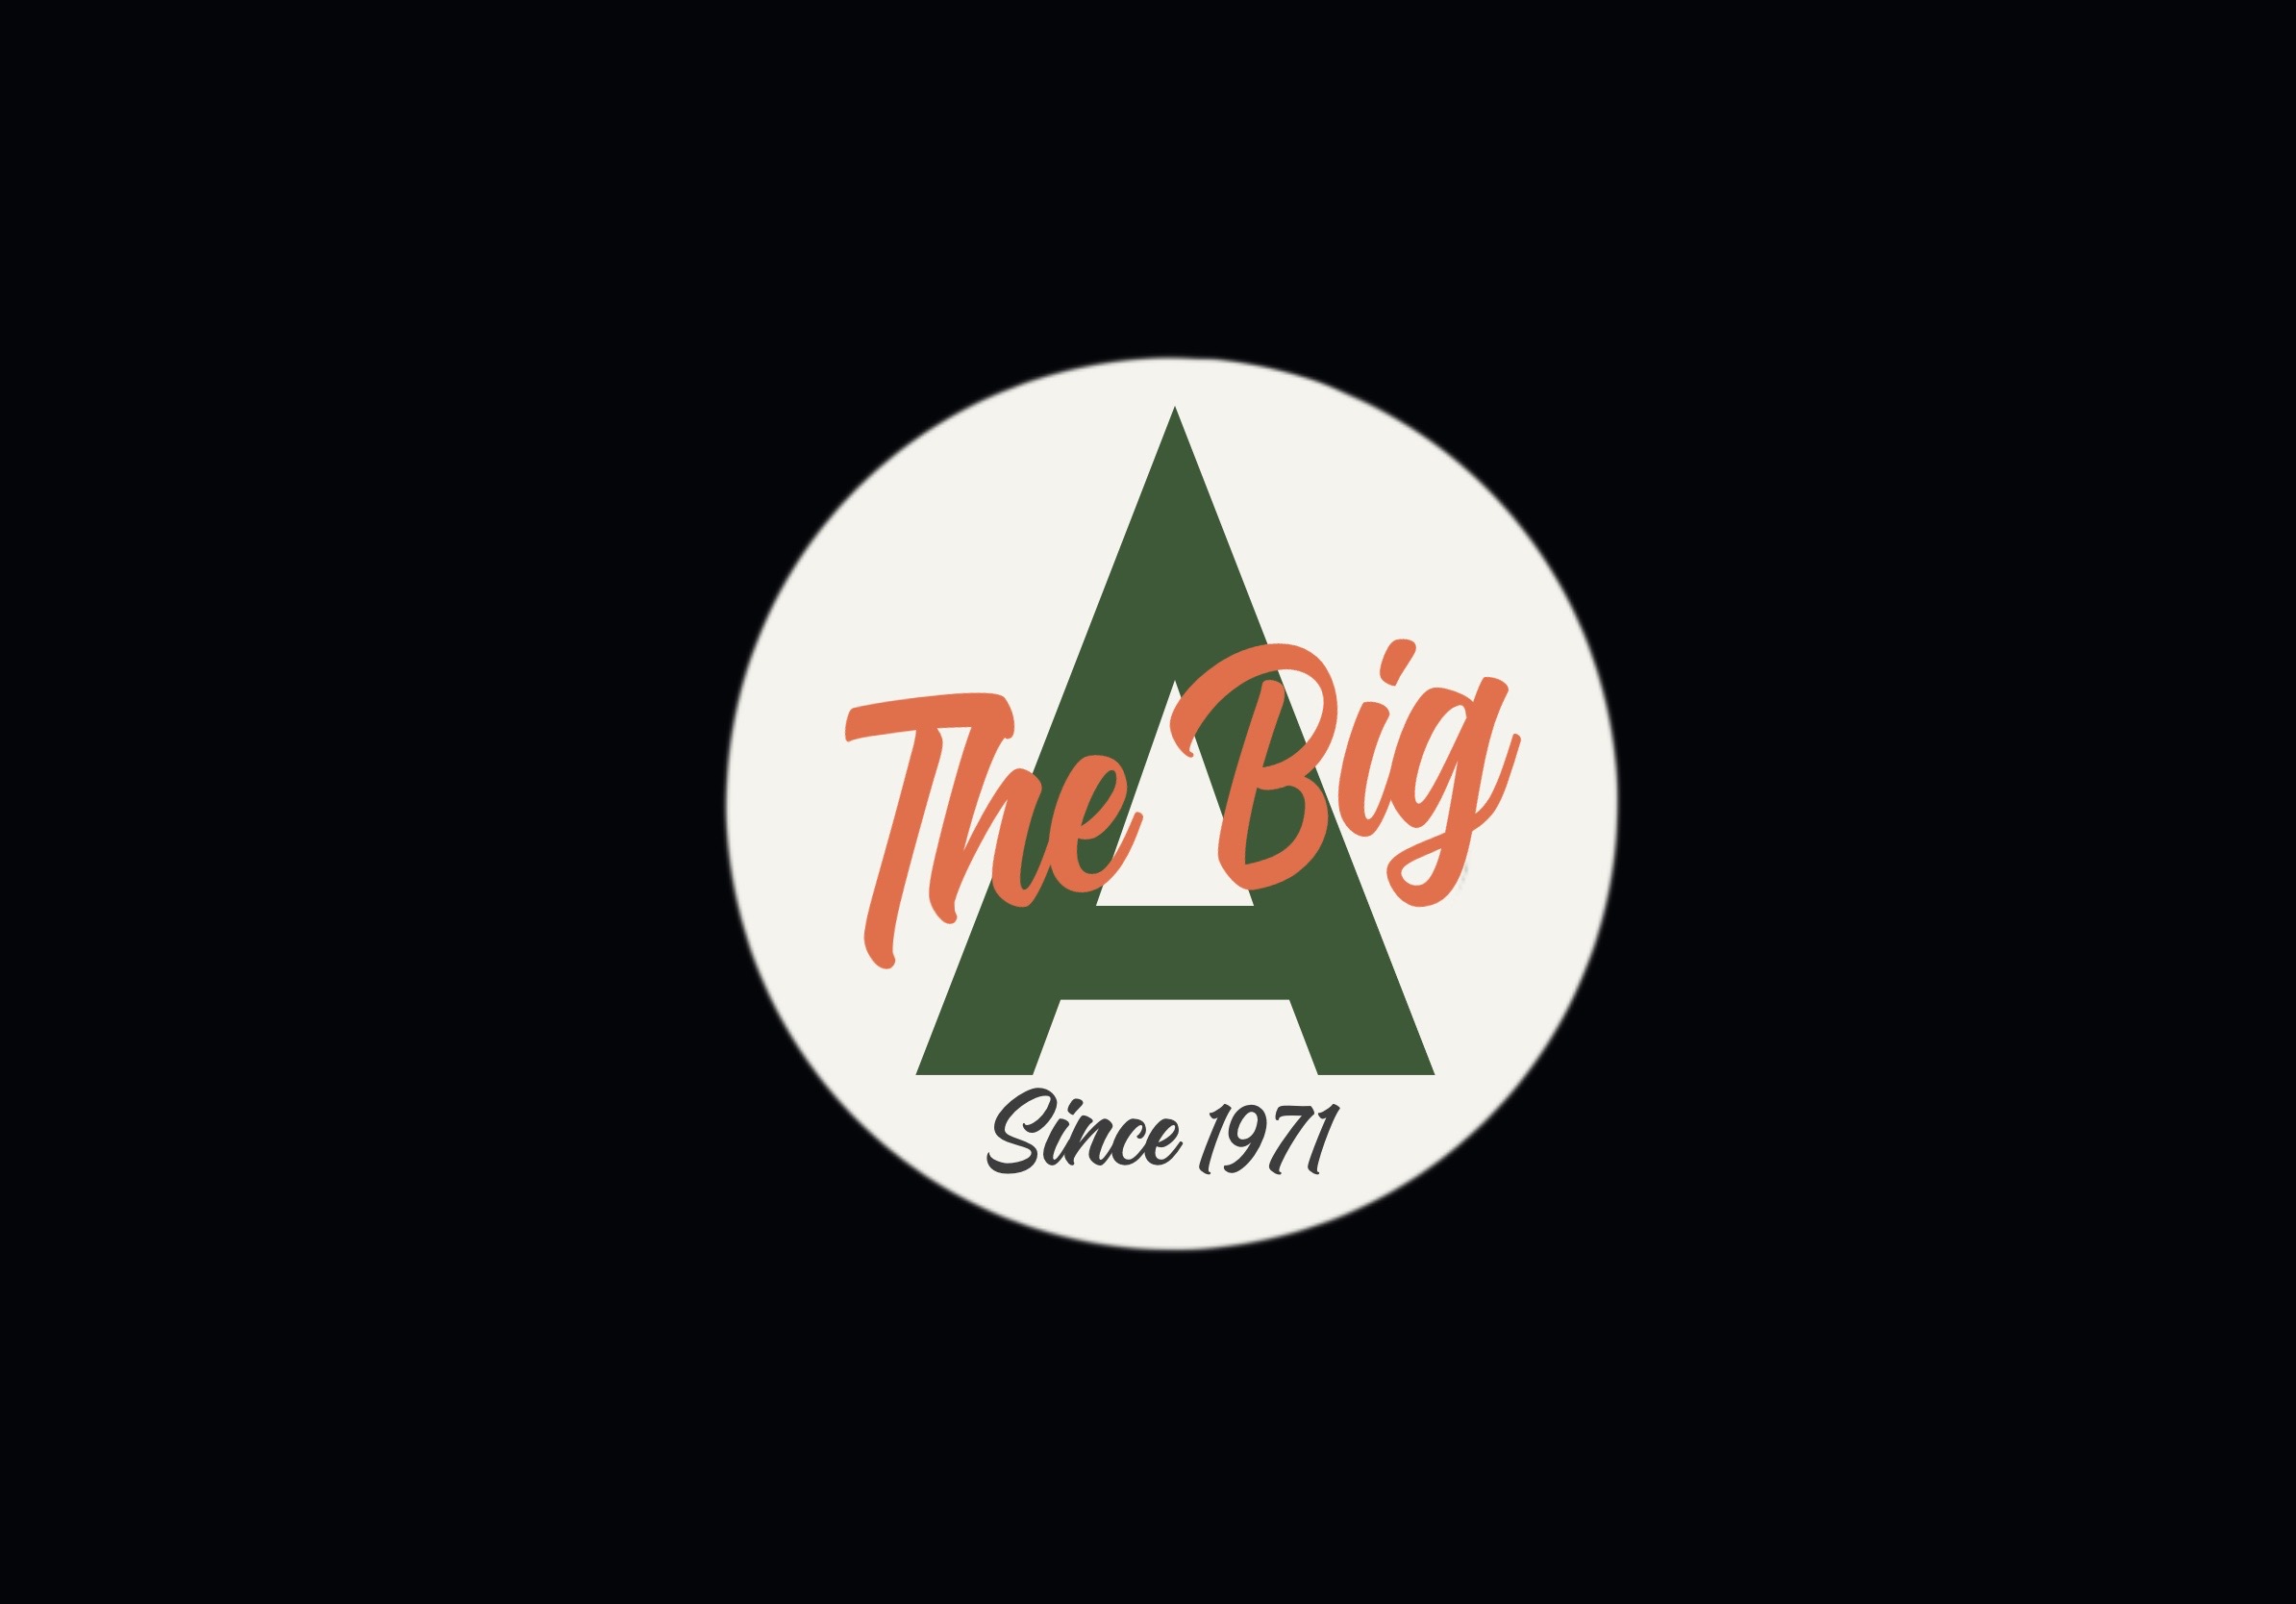 Un logo circulaire où on peut lire « The Big A since 1971 » (Le Grand A depuis 1971)